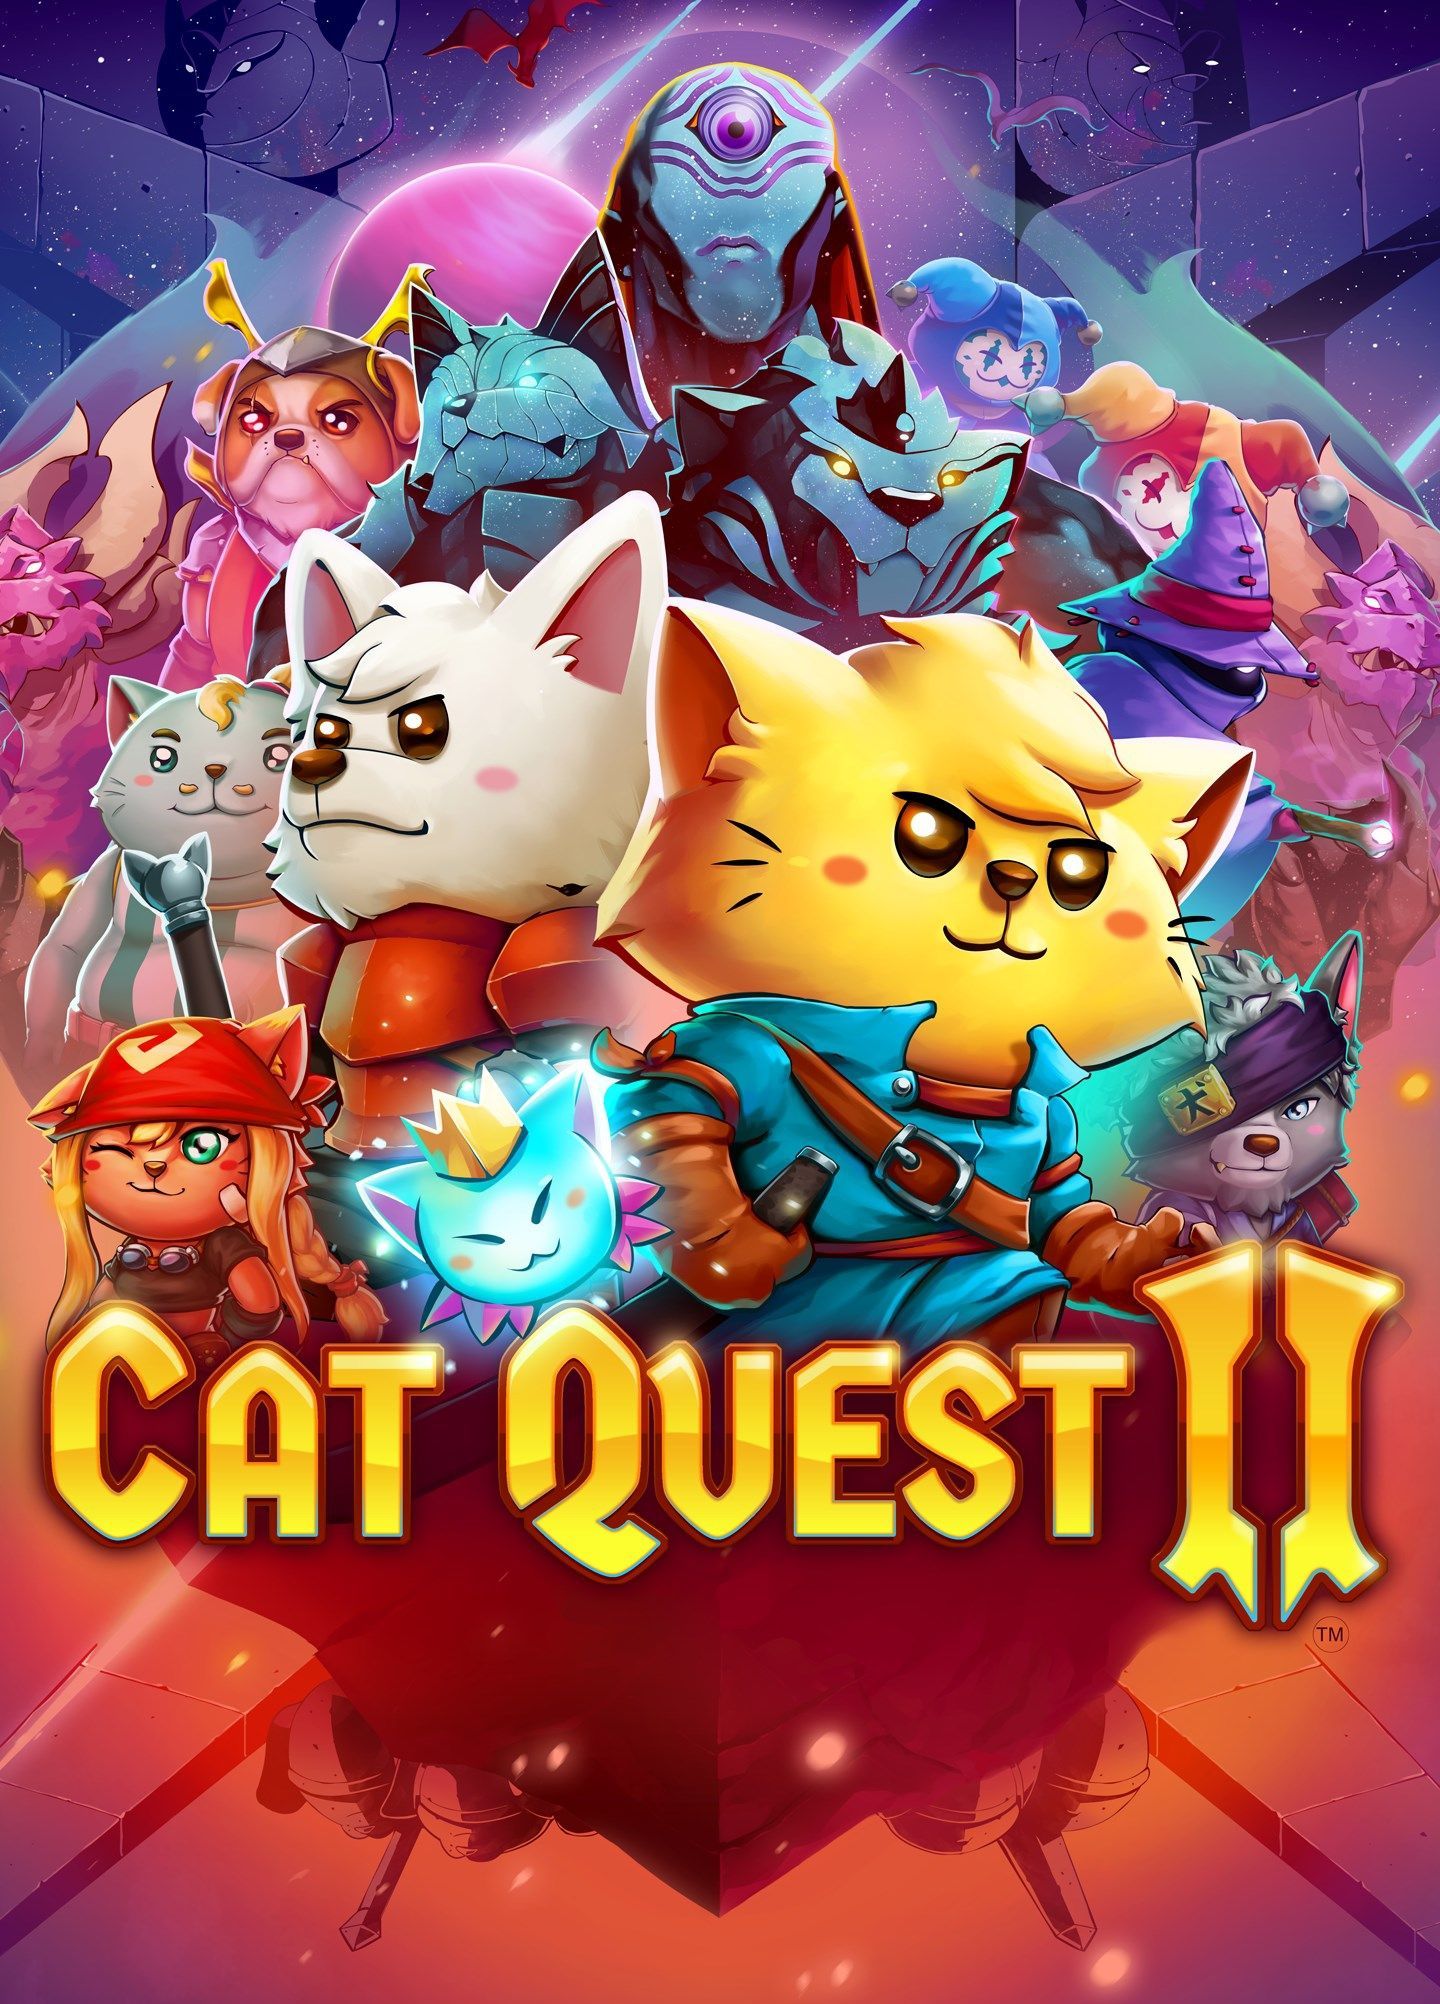 Приключения  1С Интерес Cat Quest II (для Steam) [PC, Цифровая версия] (Цифровая версия)